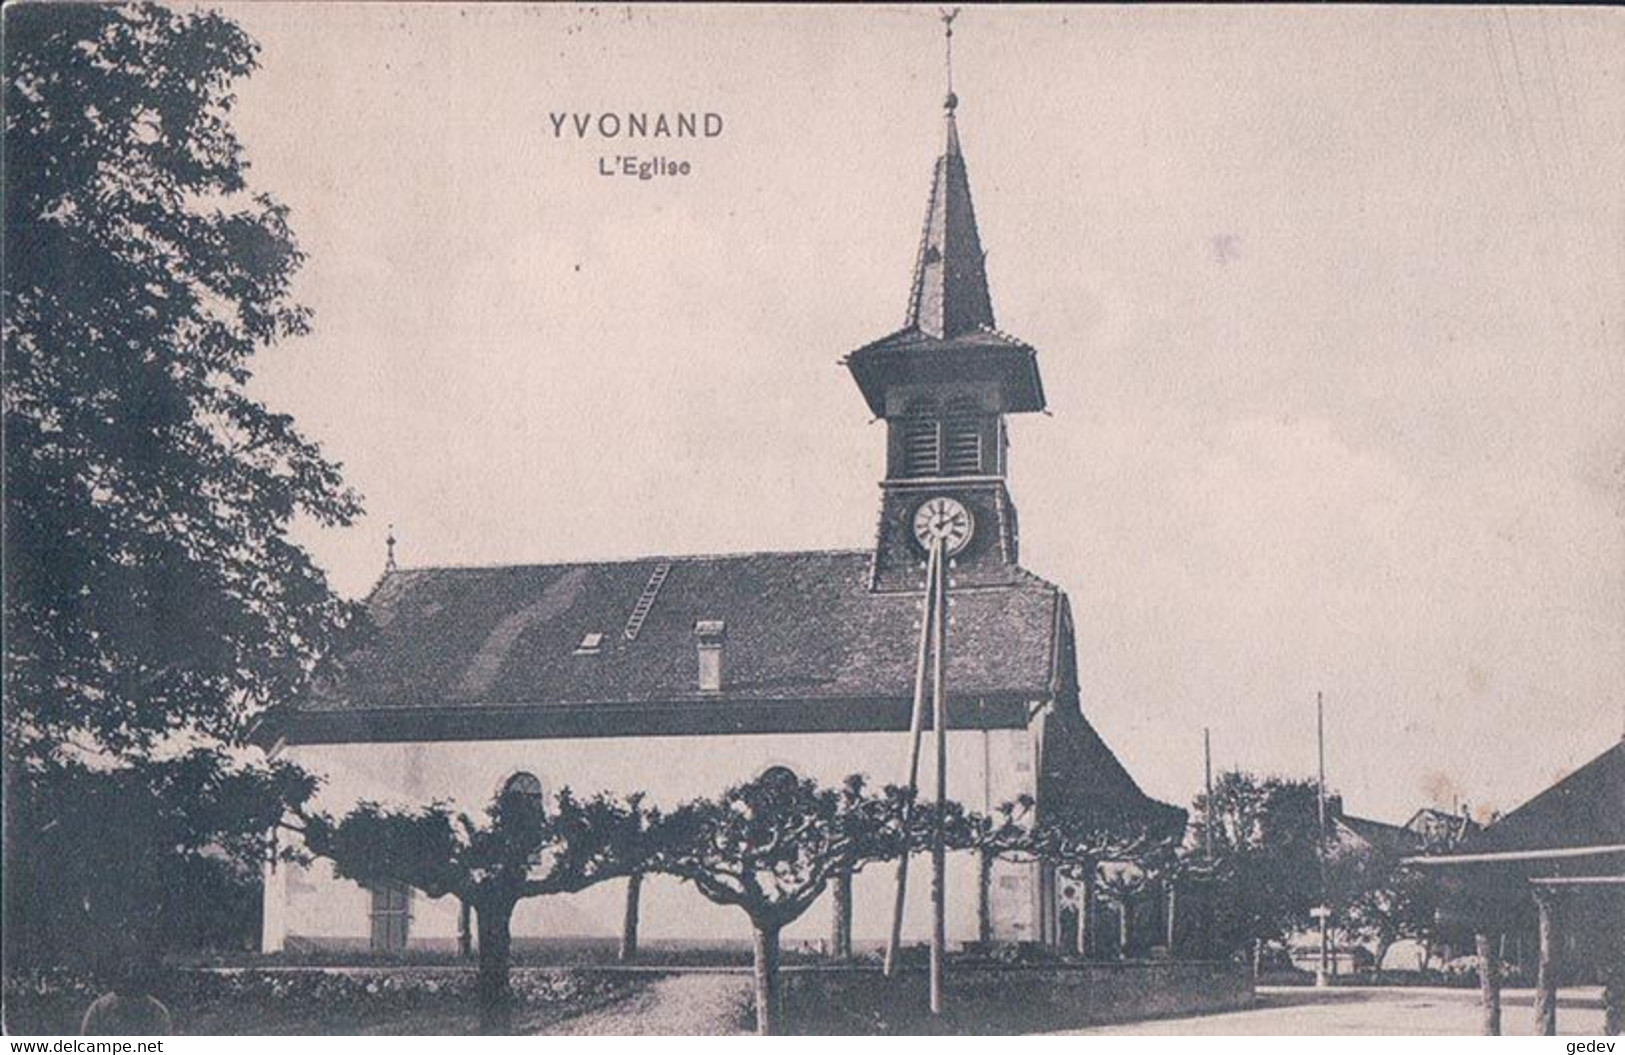 Yvonand VD, L'Eglise (3.9.1907) - Yvonand